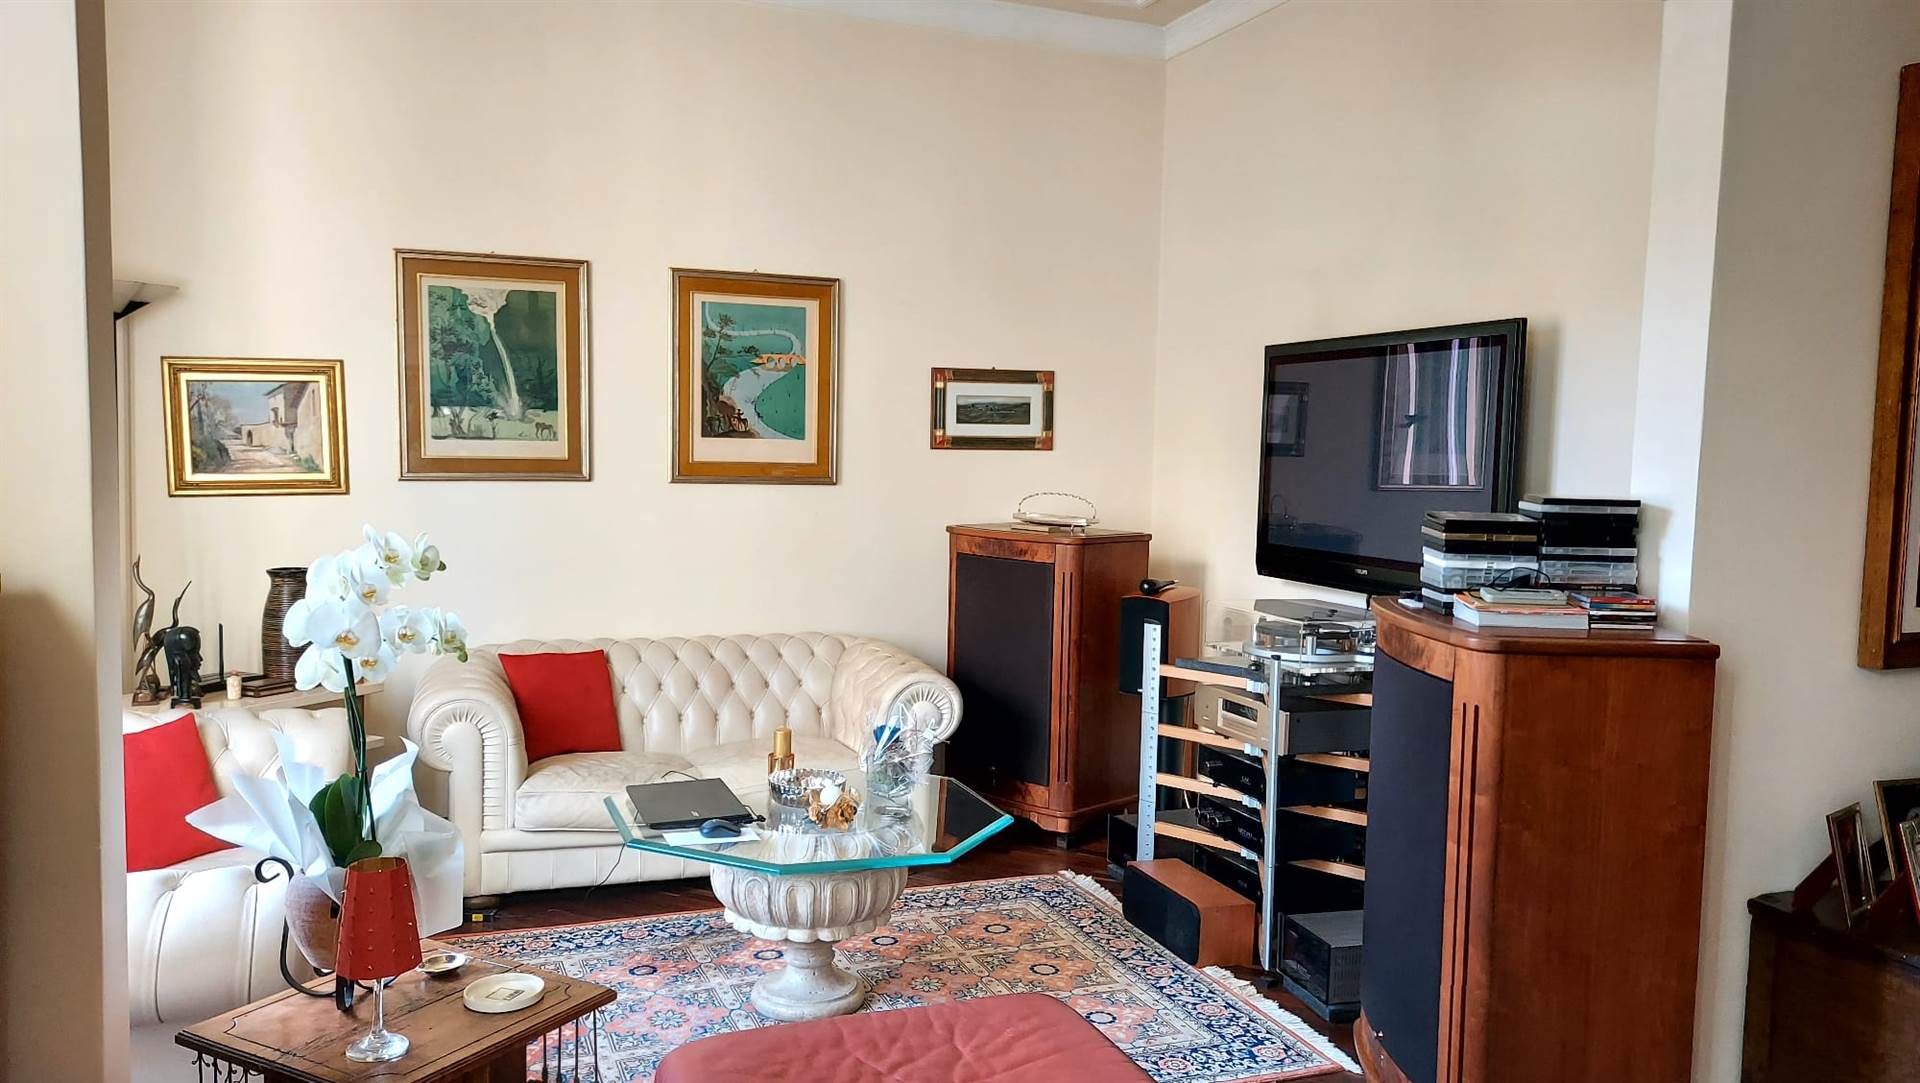 Piazza Savonarola/Donatello, vendesi bell'appartamento in ottime condizioni. Ingresso, sala doppia, sala pranzo, cucina abitabile con accesso ad 